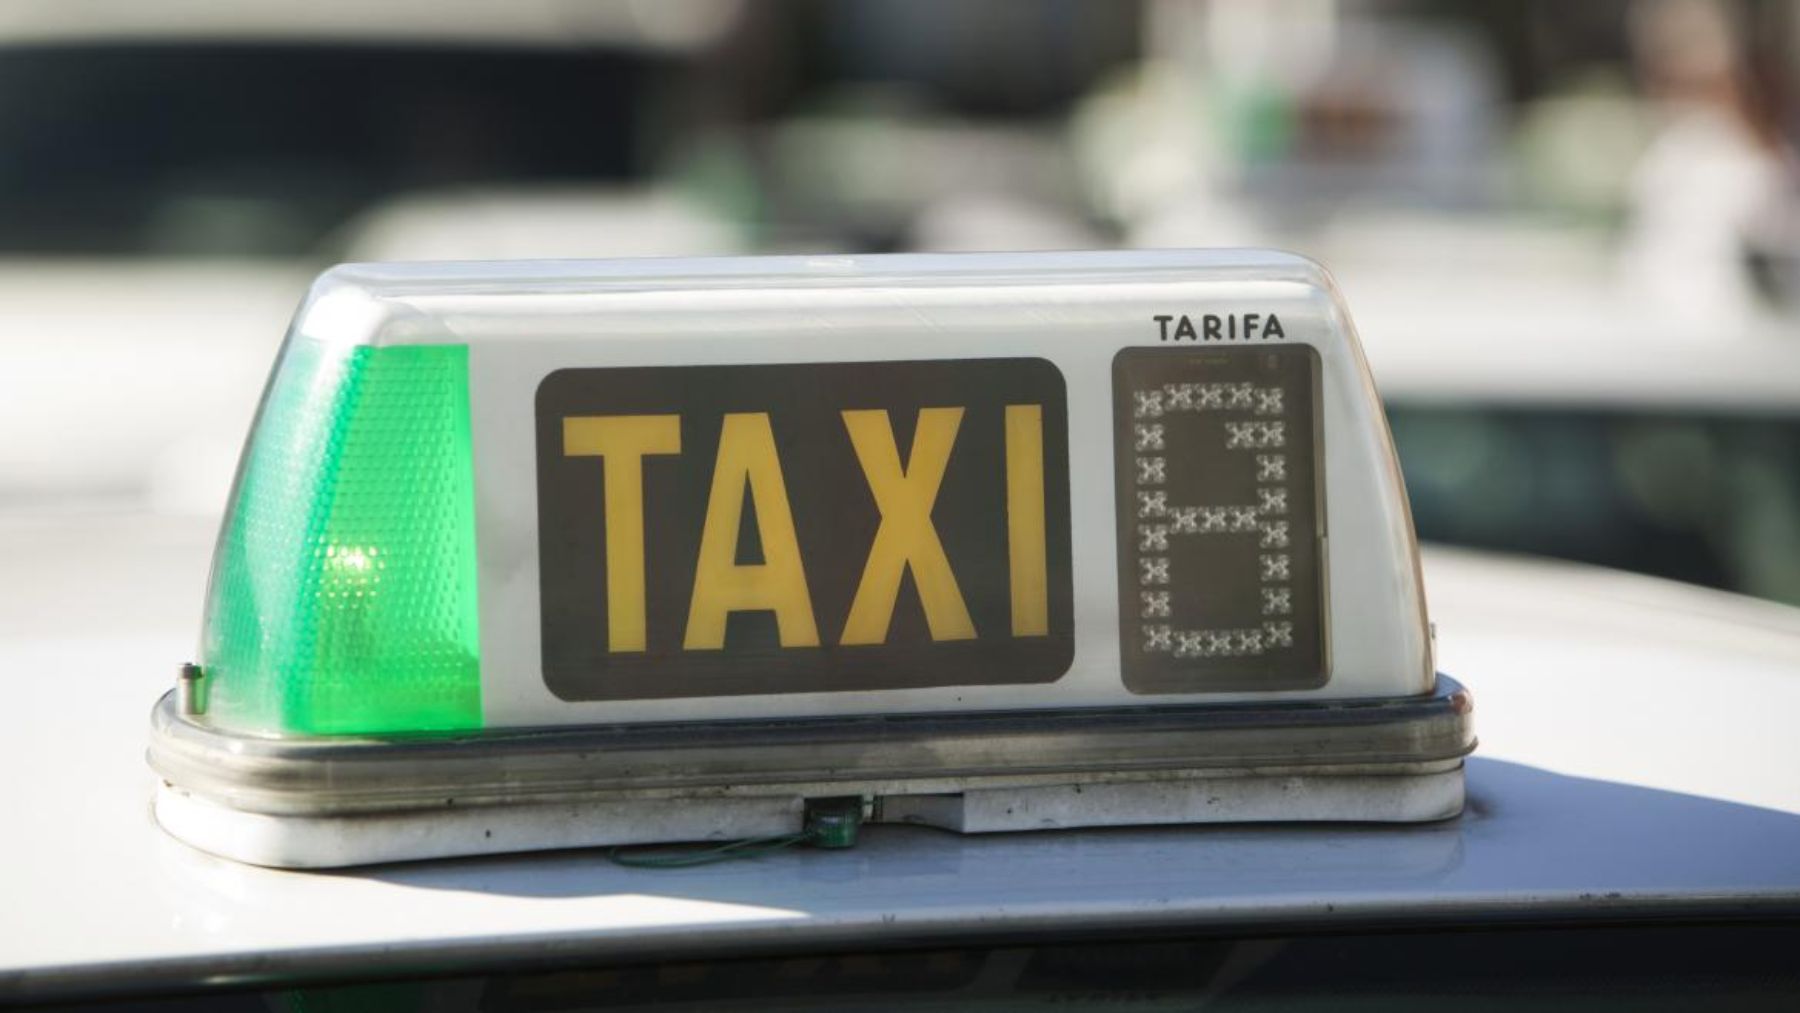 Datos curiosos sobre los taxis en el mundo